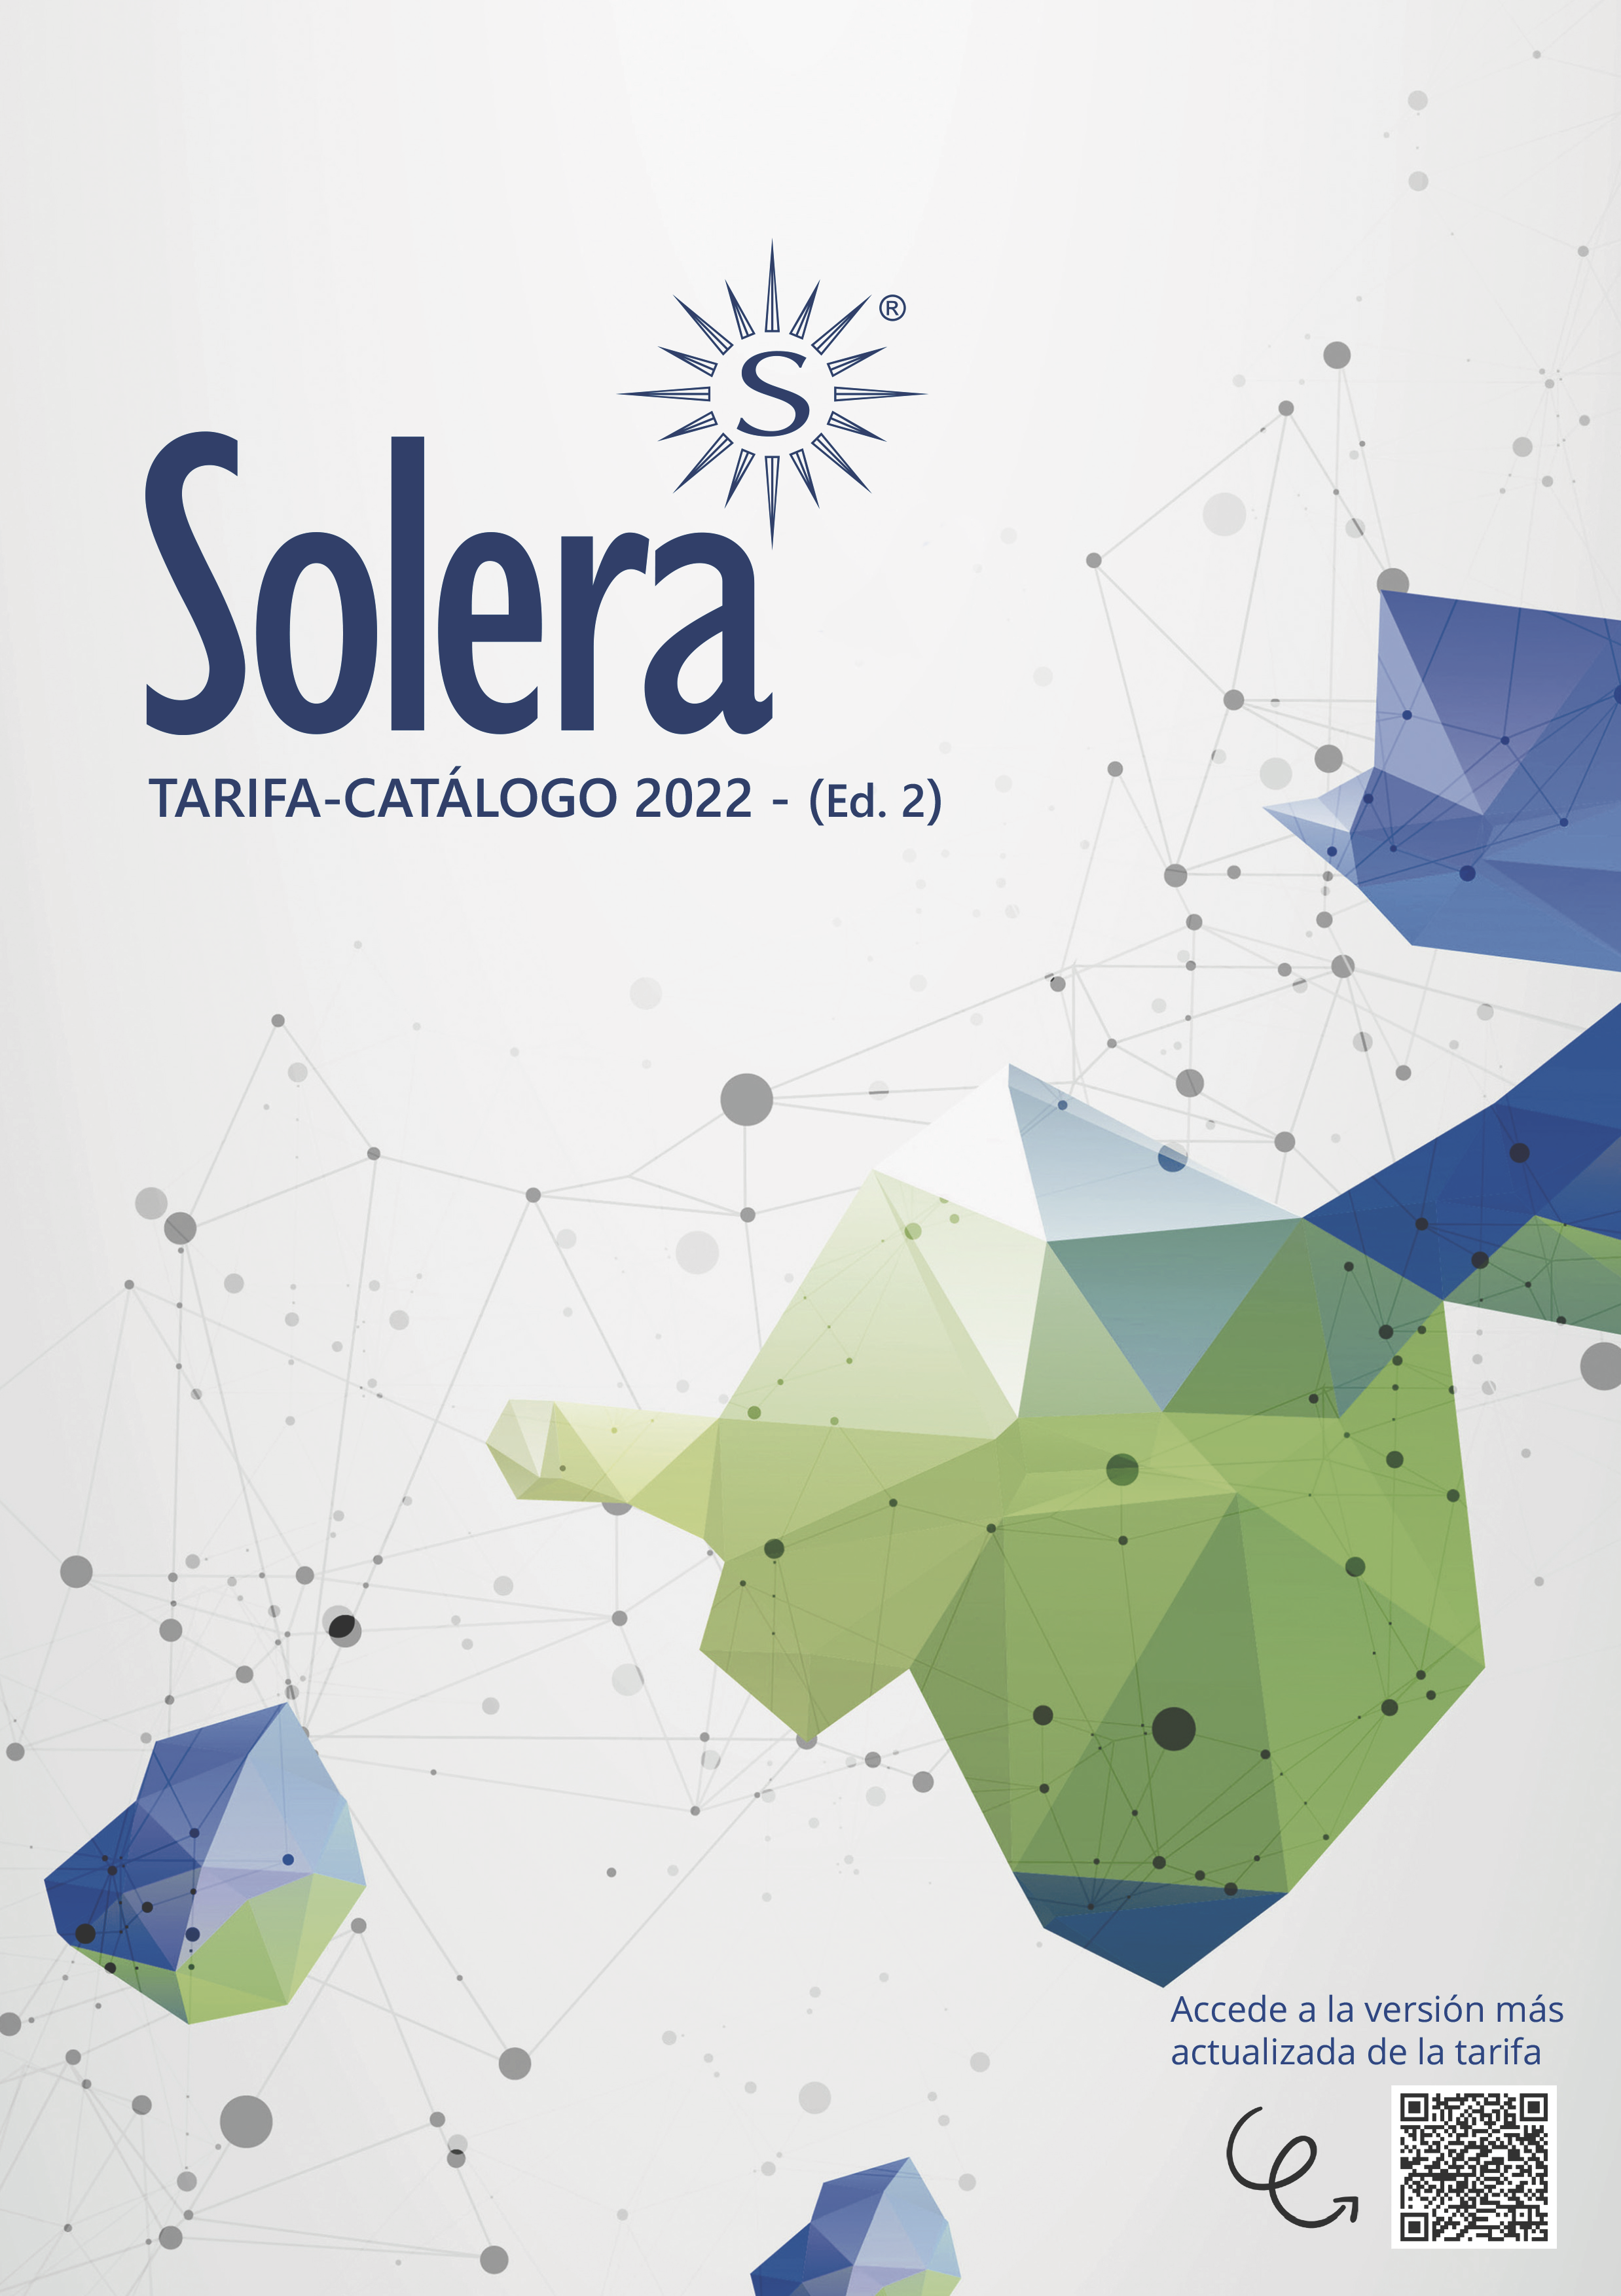 Tarifa catálogo 2022 -Ed. 2 interactiva